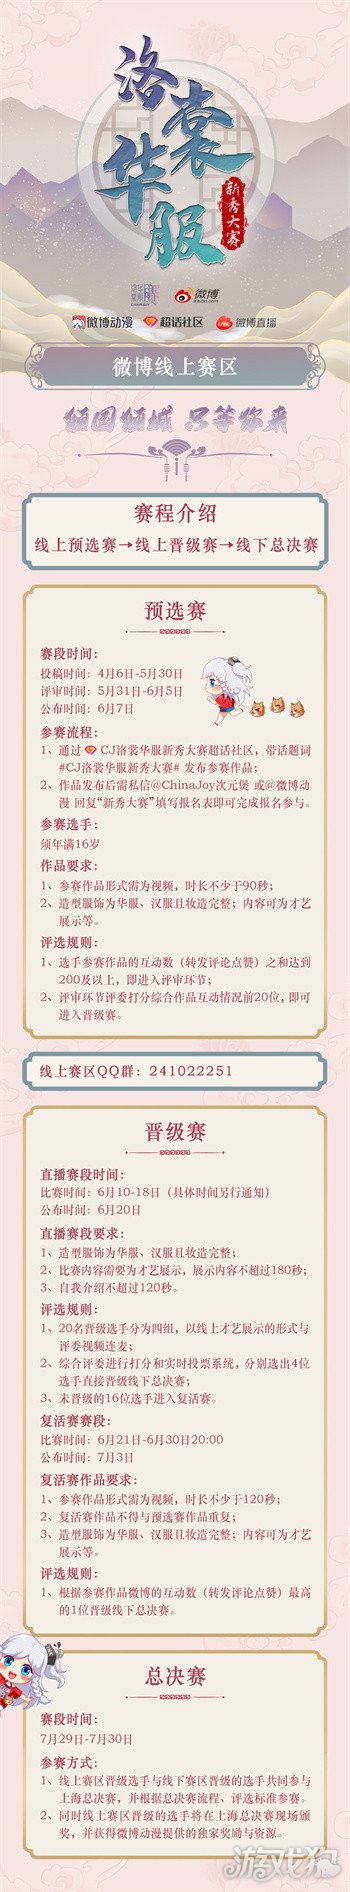 2022年ChinaJoy洛裳华服新秀大赛 微博线上赛区正式开赛